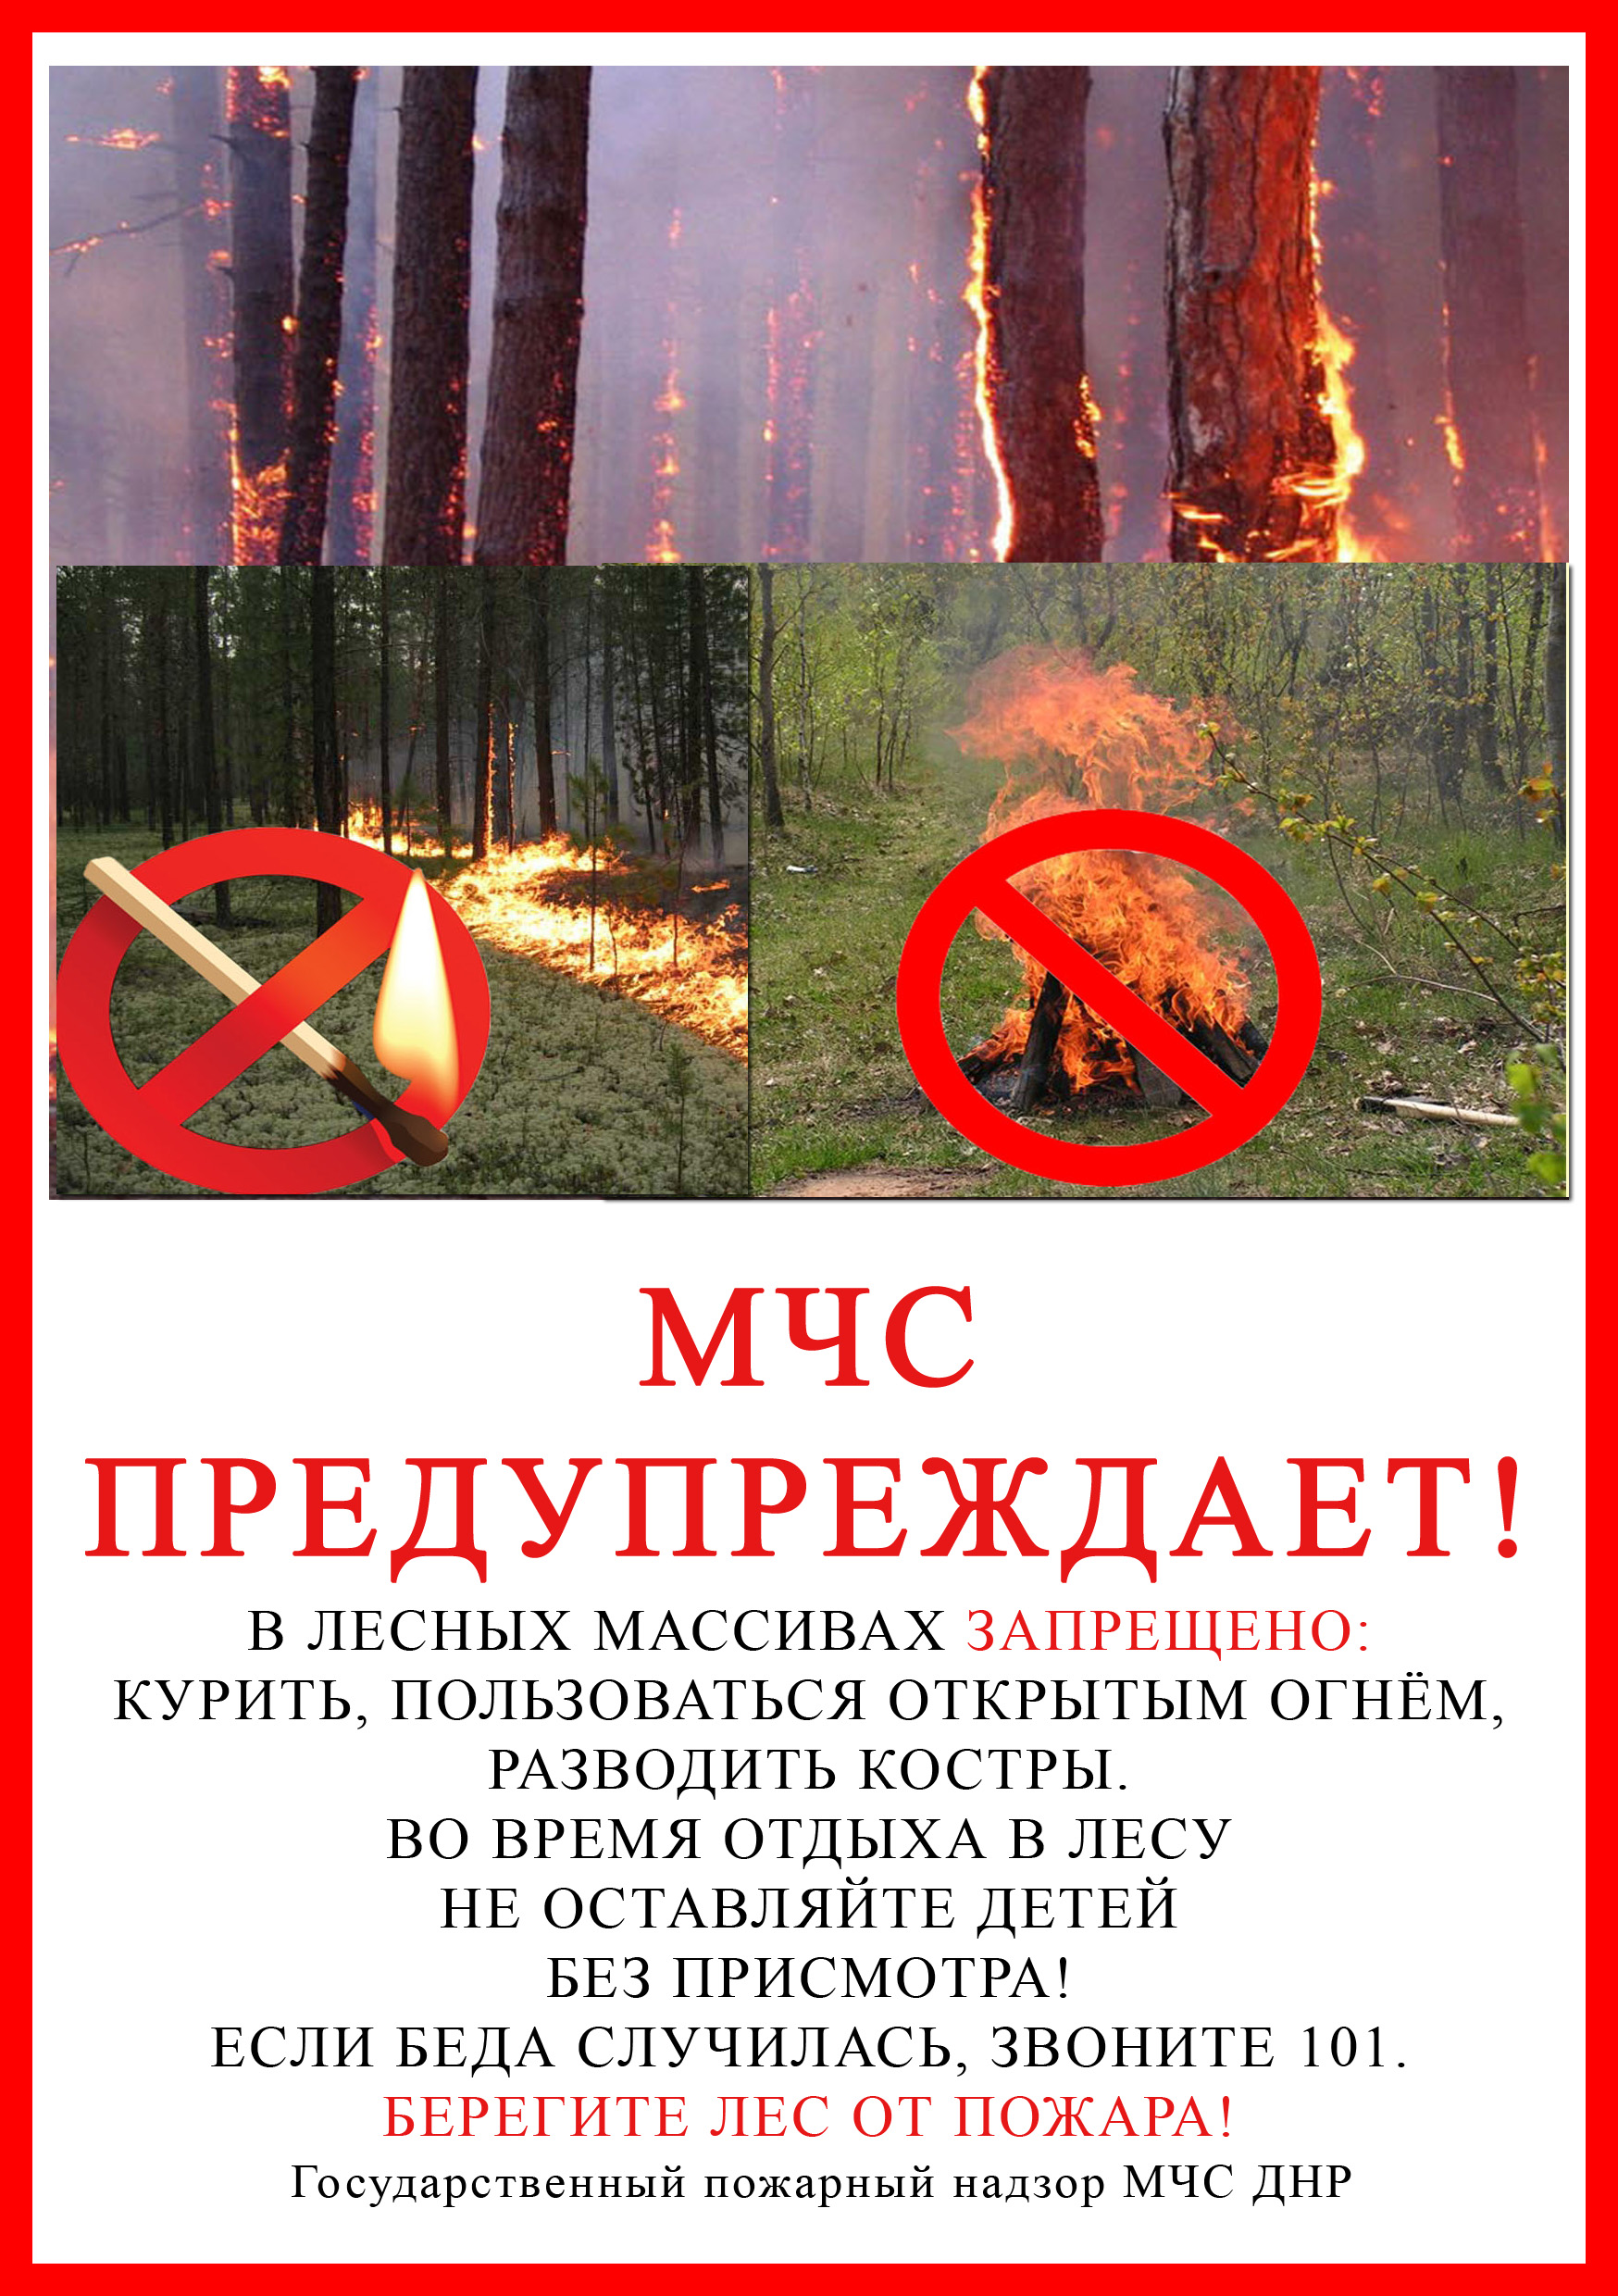 Разводить костер в лесу запрещено. МЧС предупреждает. Берегите лес. Памятка по пожарам в лесу. Памятка берегите лес от пожара.